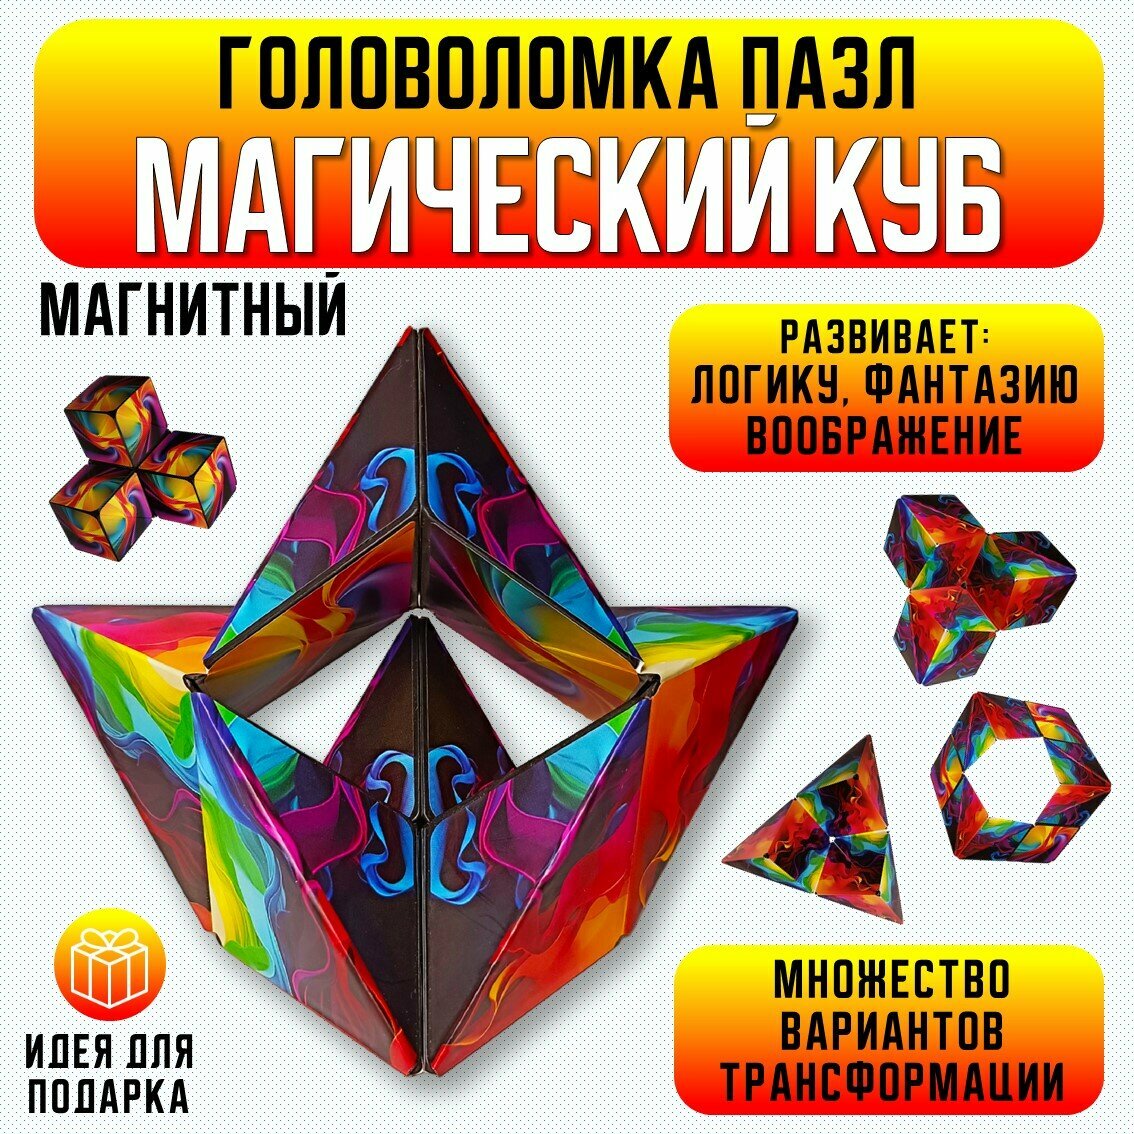 Головоломка для детей и взрослых волшебный куб, логическая игра / кубик рубика, игрушка антистресс Magic Cube - магический магнитный 3D куб / РАДУГА1